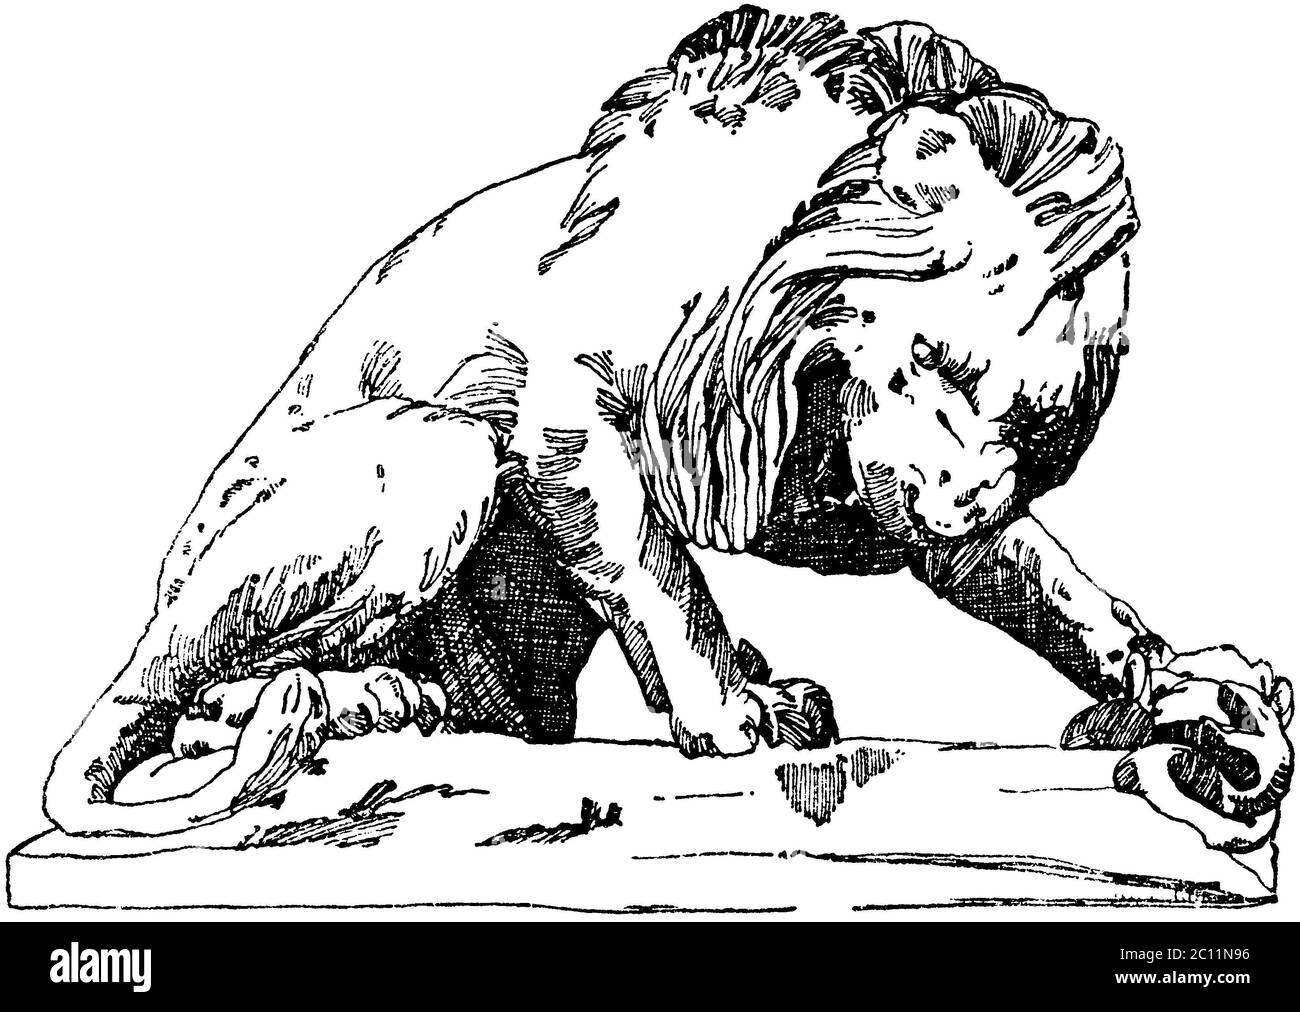 lion / Panthera leo / Löwe aus den Tuilerien (Terrasse du bord-de-l'eau) in Paris. 19. Jahrhundert. (Baldus, Raguenet) / pattern book, ) Stock Photo